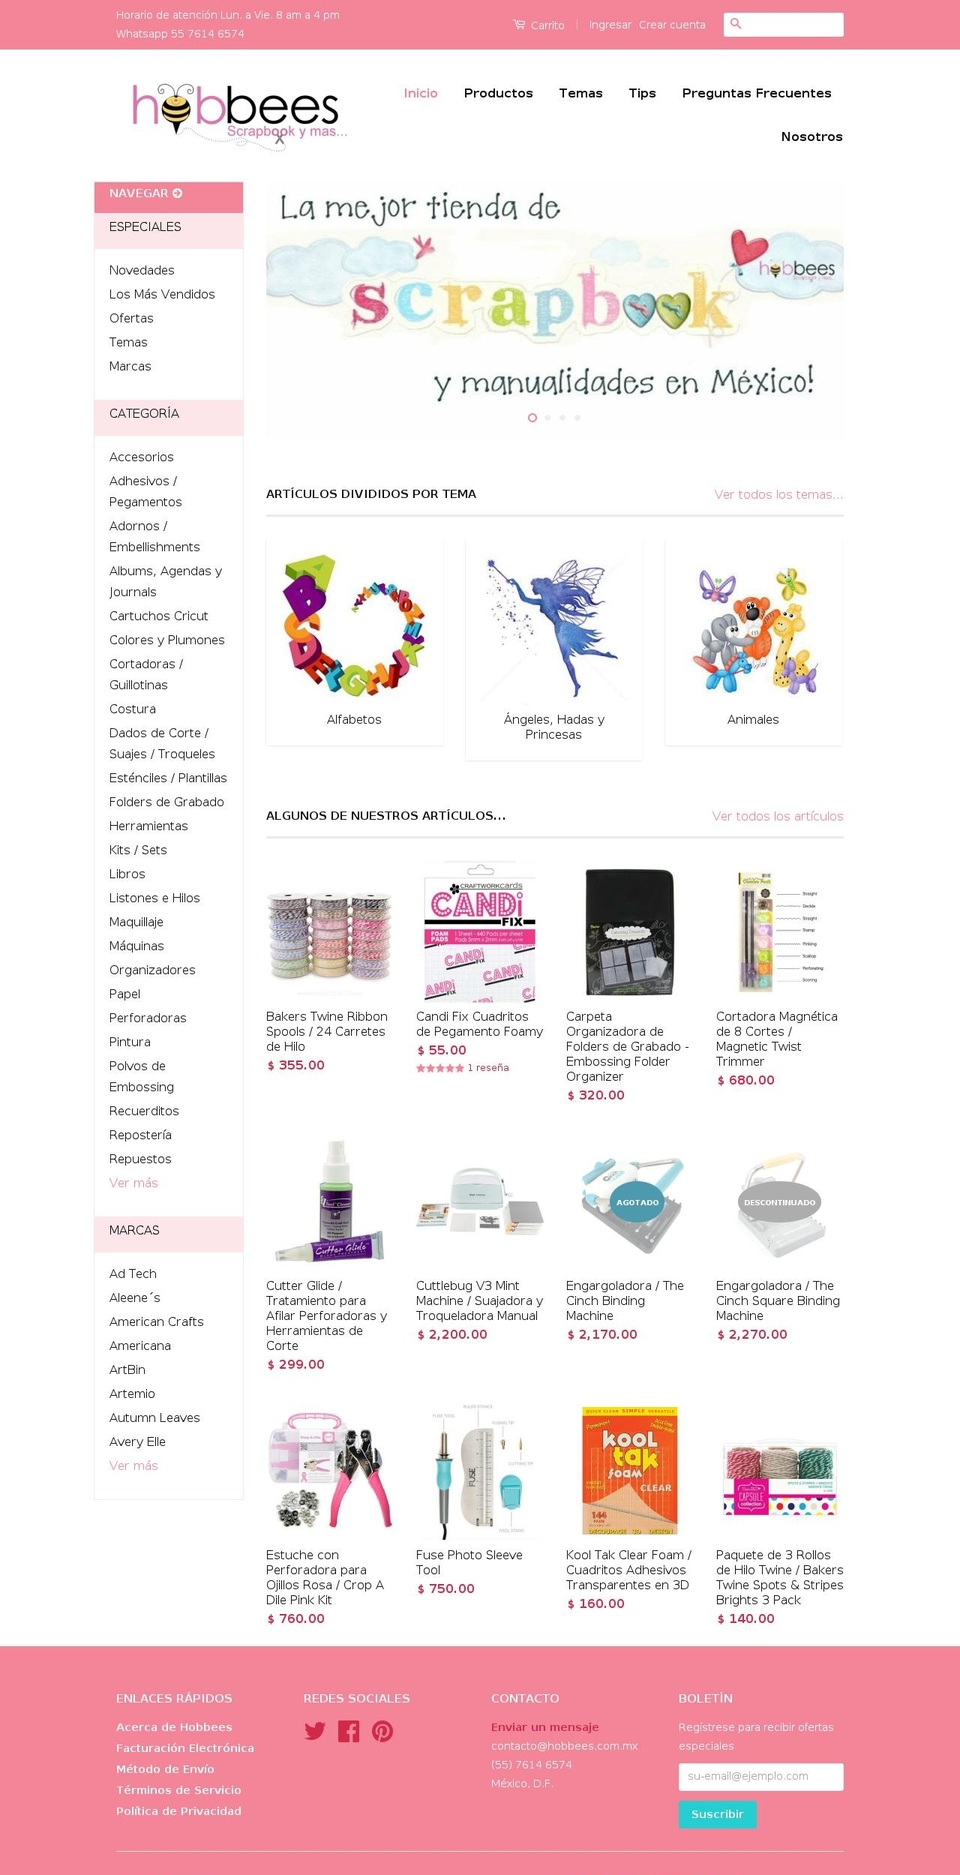 hobbees.com.mx shopify website screenshot